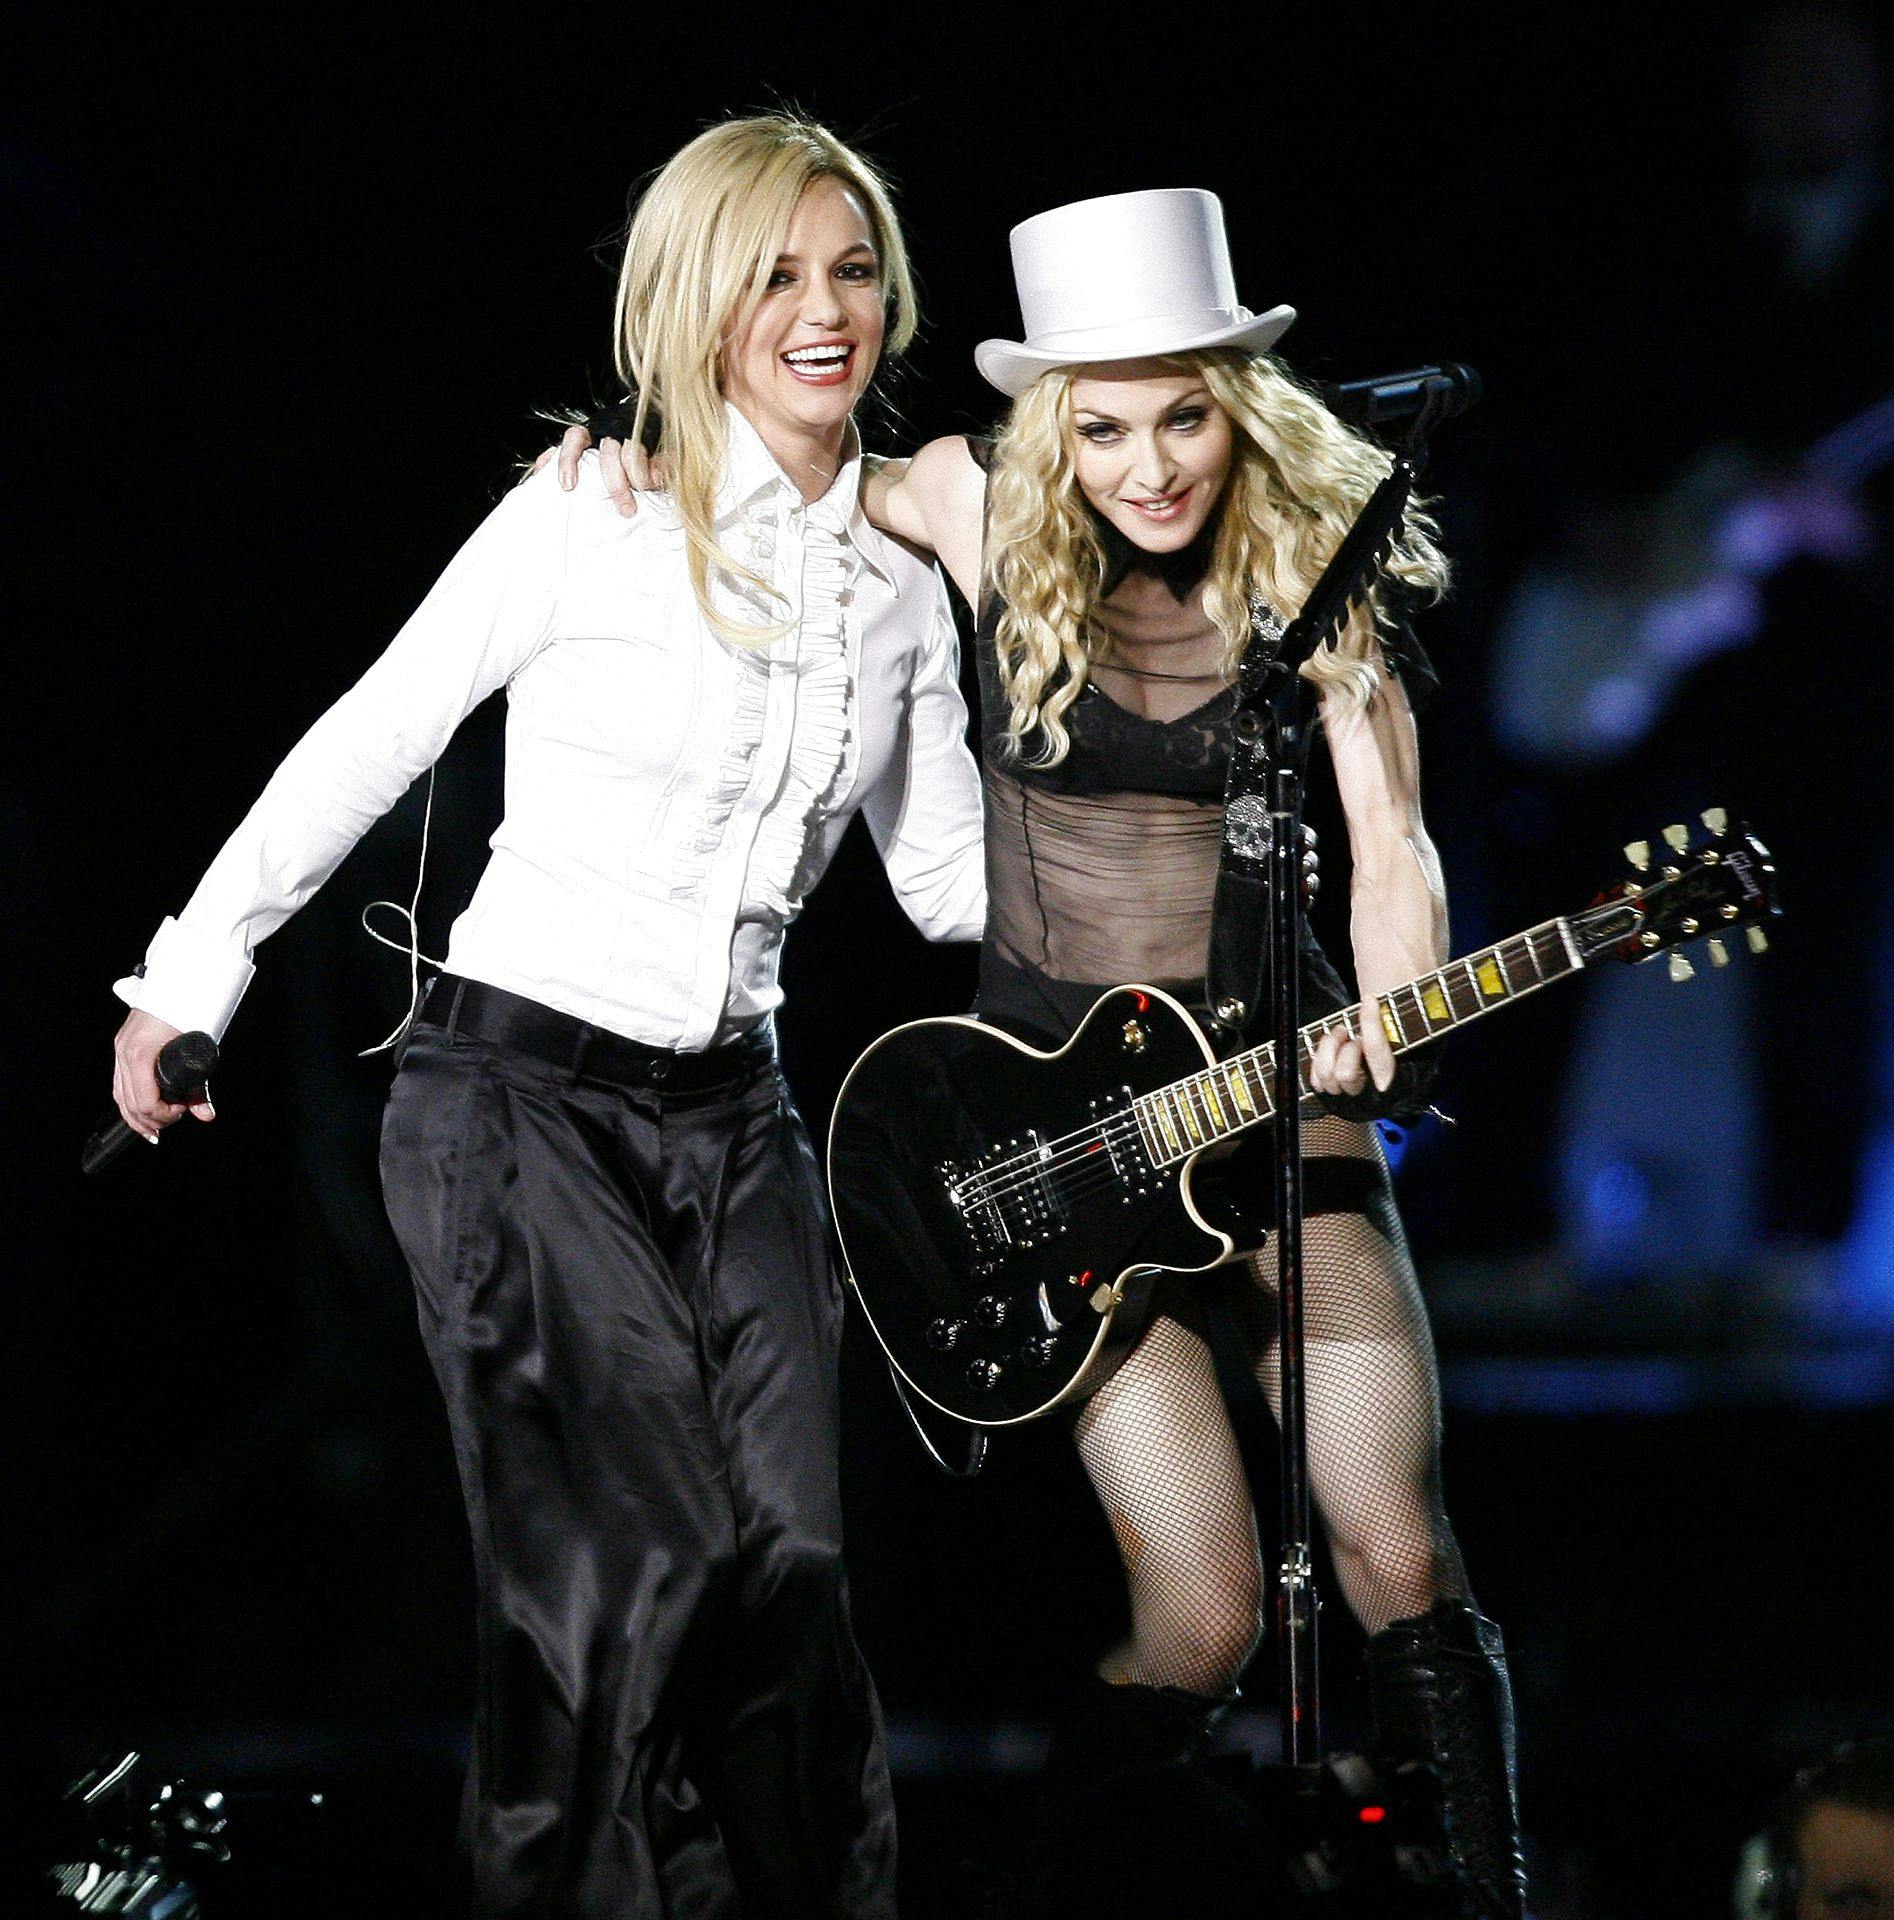 Mon Britney Spears er på listen over de kendisser, som Madonna mener, hun har banet vejen for?
